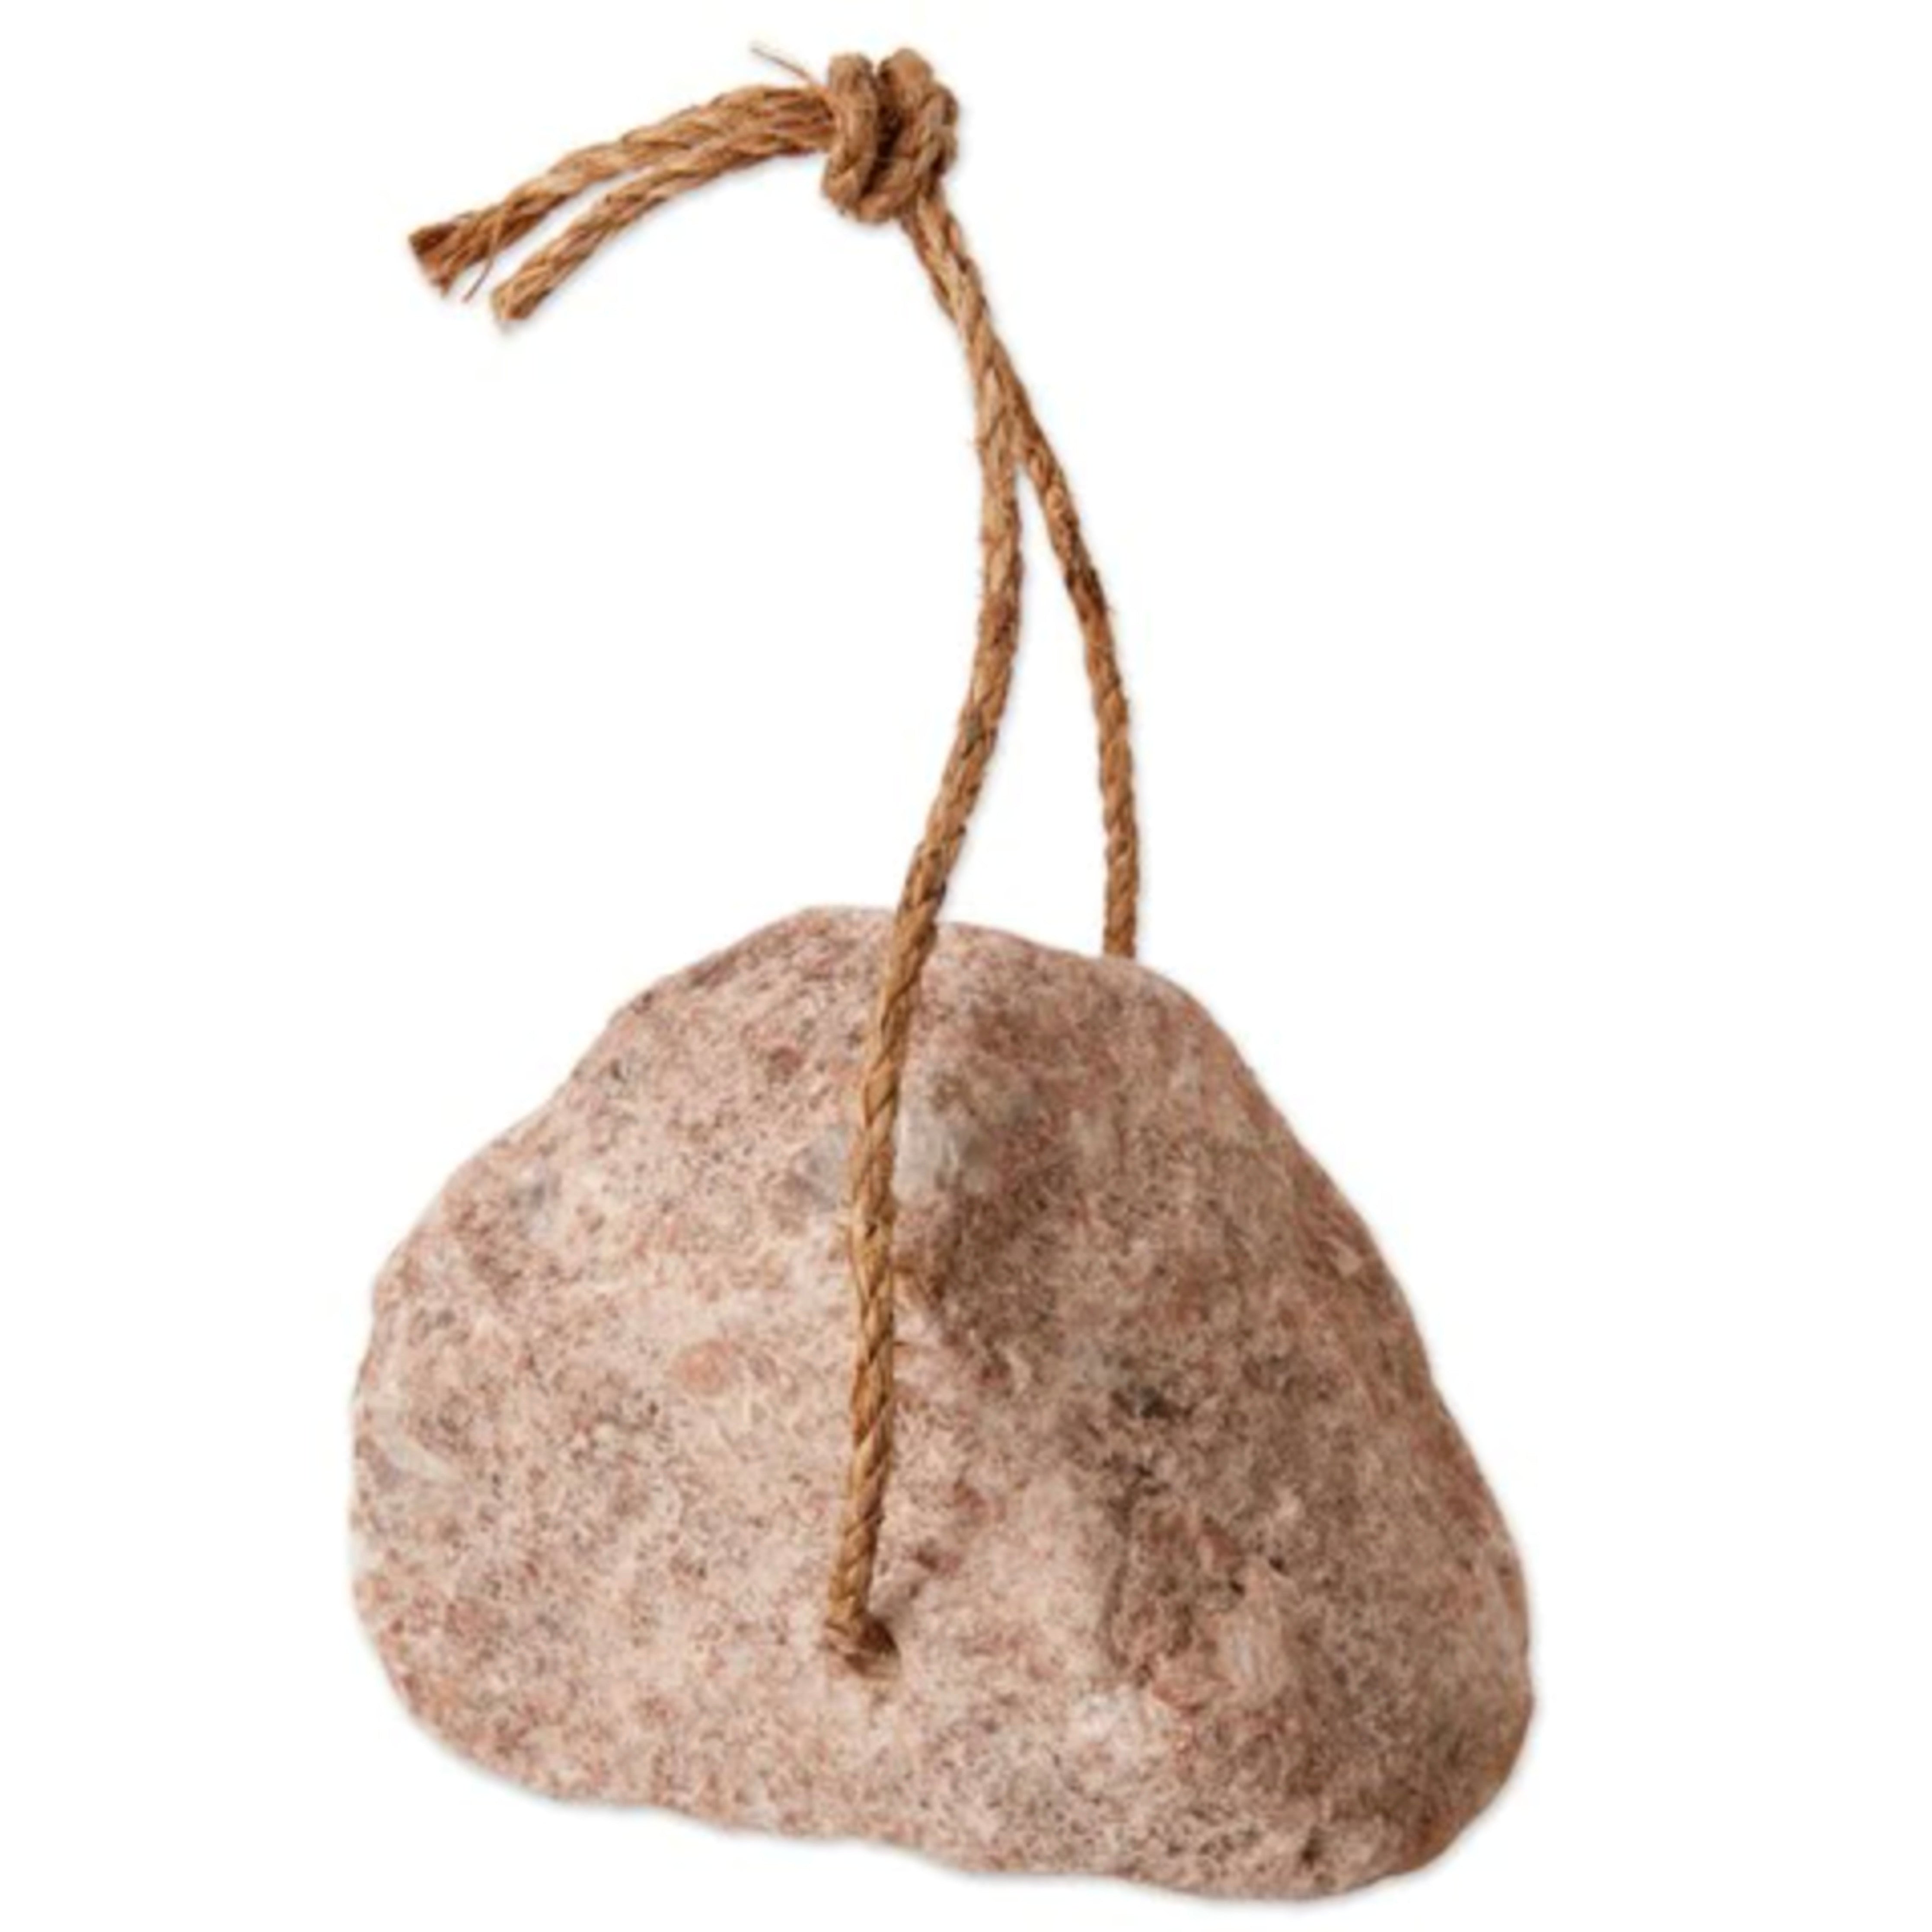 Redmond Rock Salt On A Rope